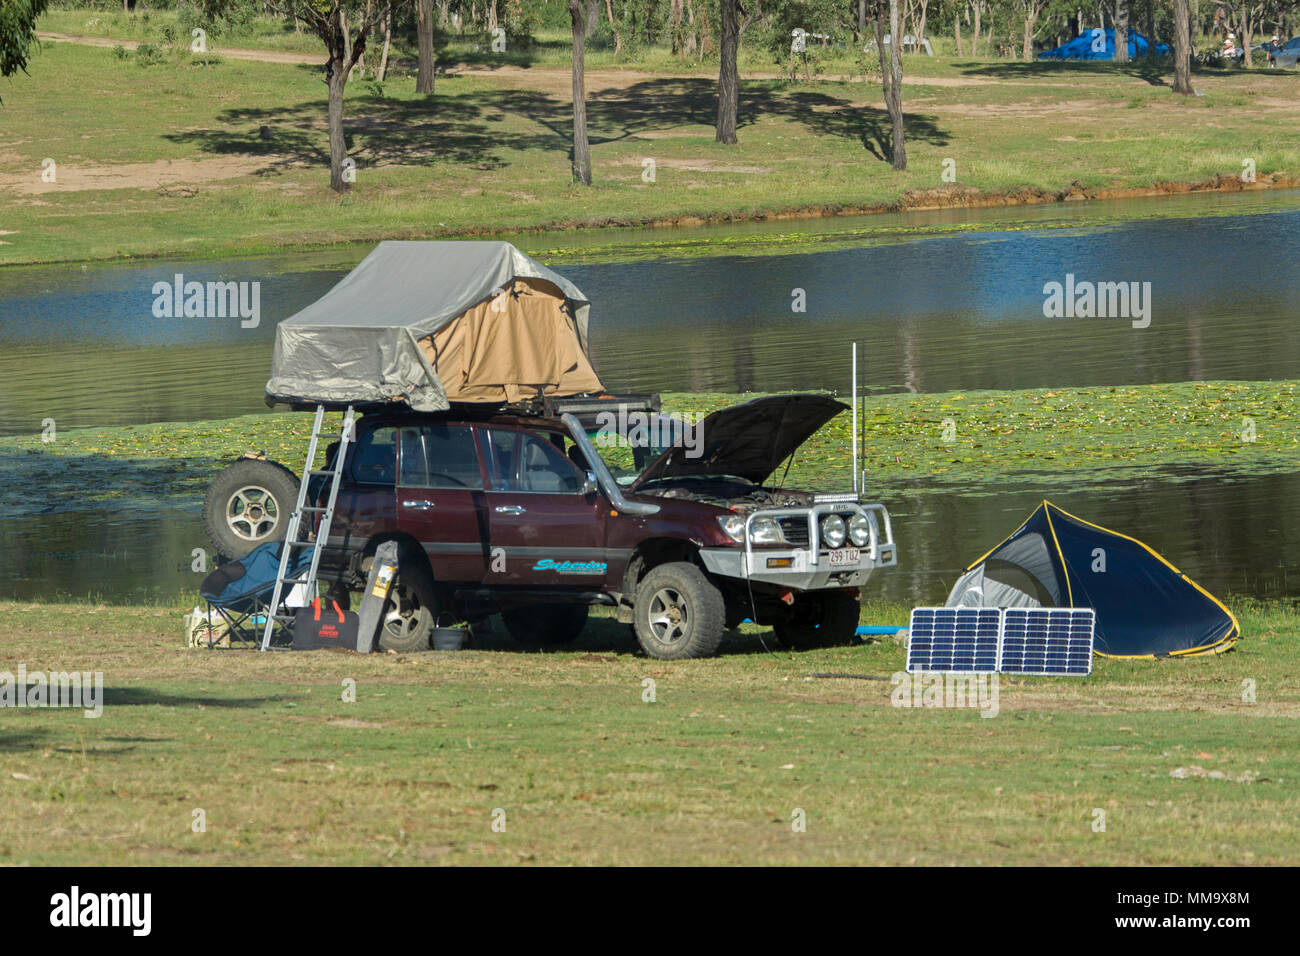 Fahrzeug mit Allradantrieb auf dem Dach Zelt, Campingausrüstung, und solar panel auf grassy Bank neben ruhigen blauen Wasser des Eungalla Dam, QLD, Australien Stockfoto